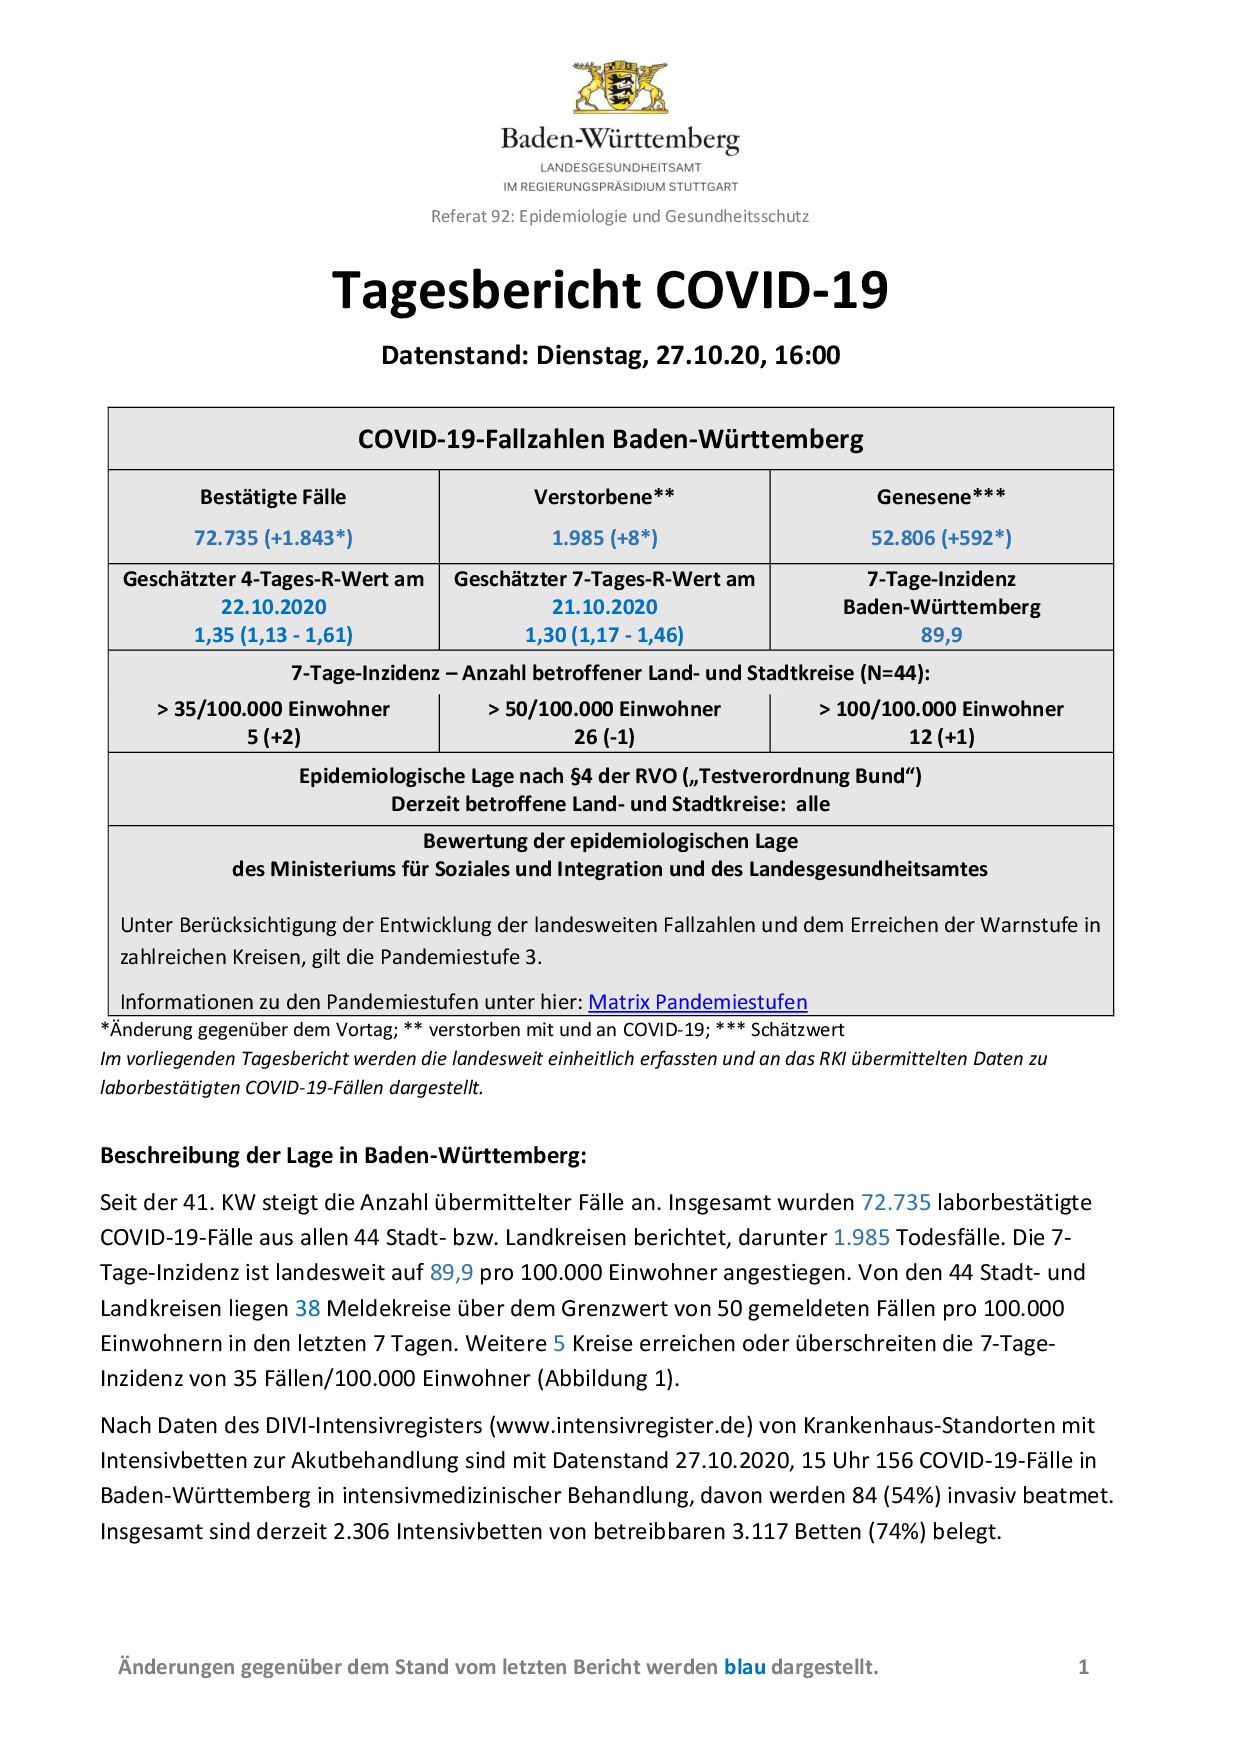 COVID-19 Tagesbericht (27.10.2020) des Landesgesundheitsamts Baden-Württemberg – (ausführlicher)